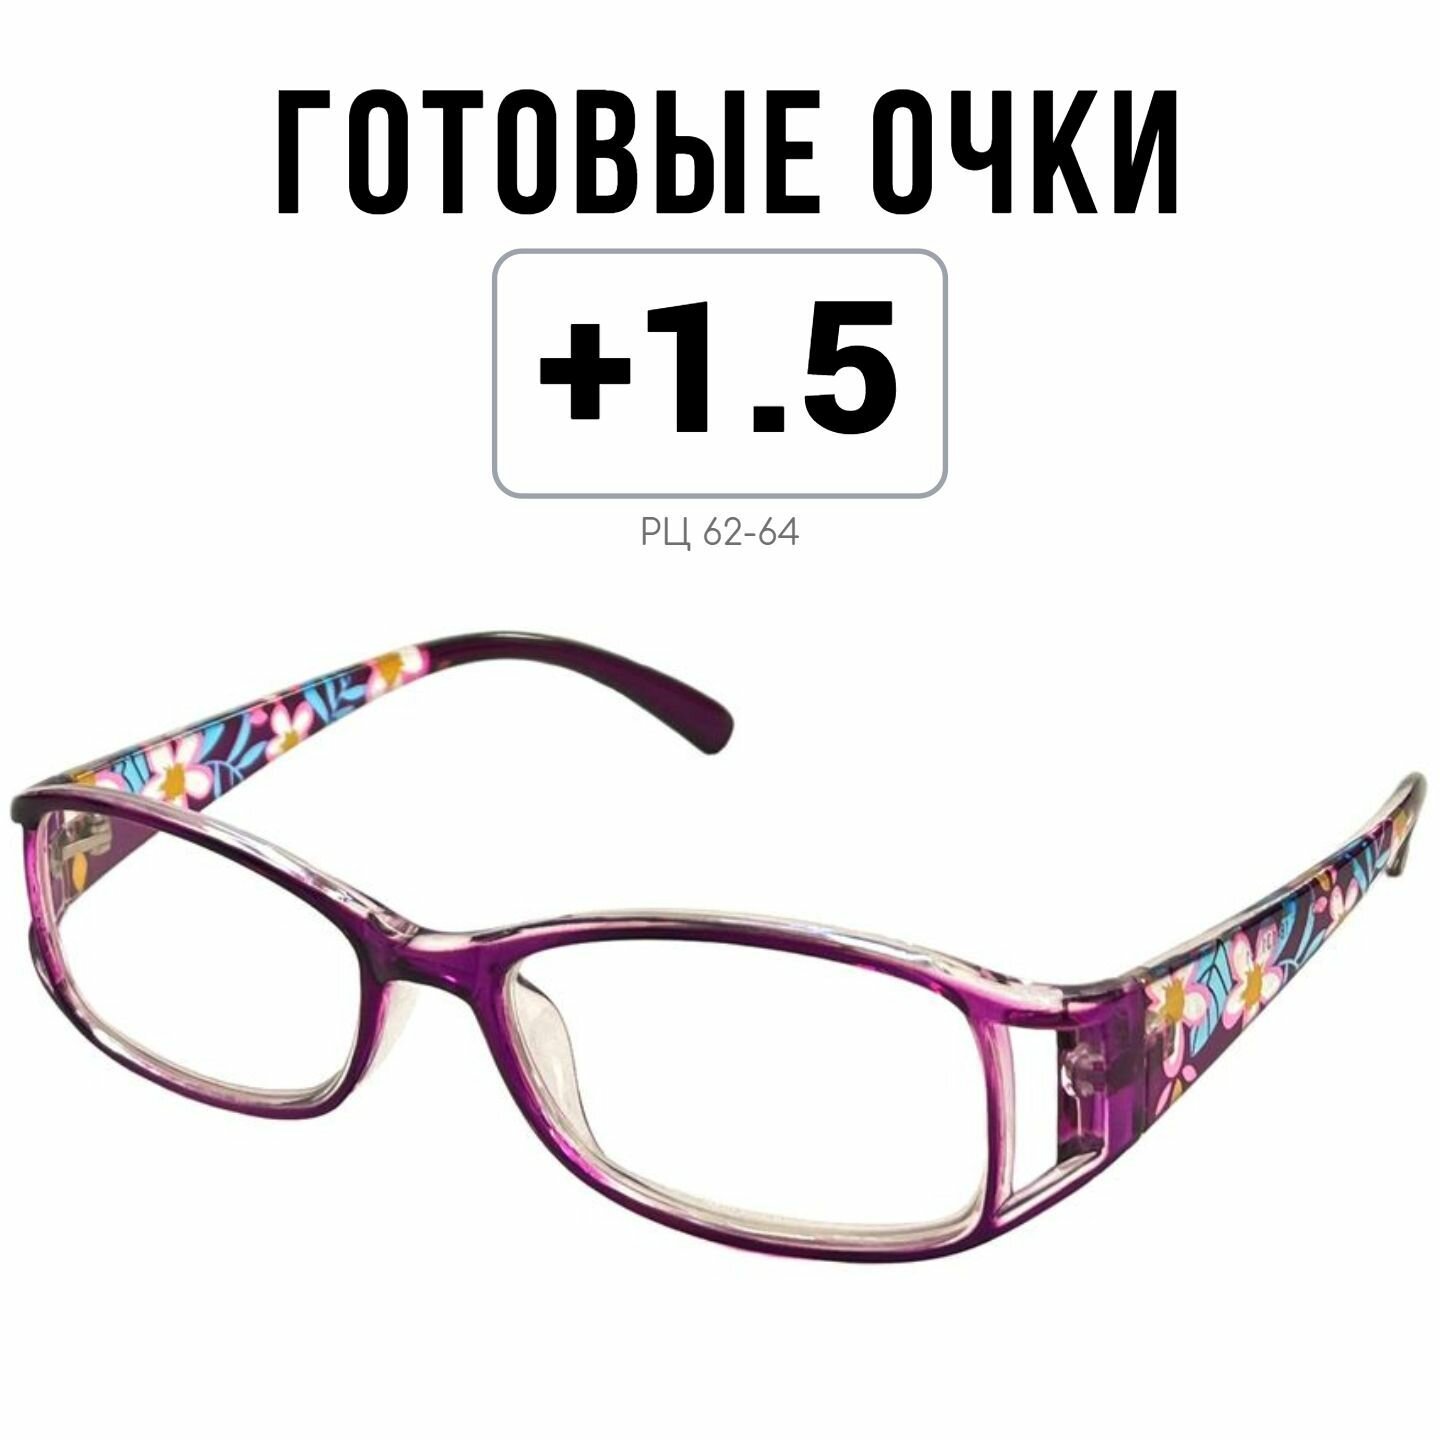 Готовые очки для зрения MOCT с диоптриями +1.5 женские корригирующие для чтения